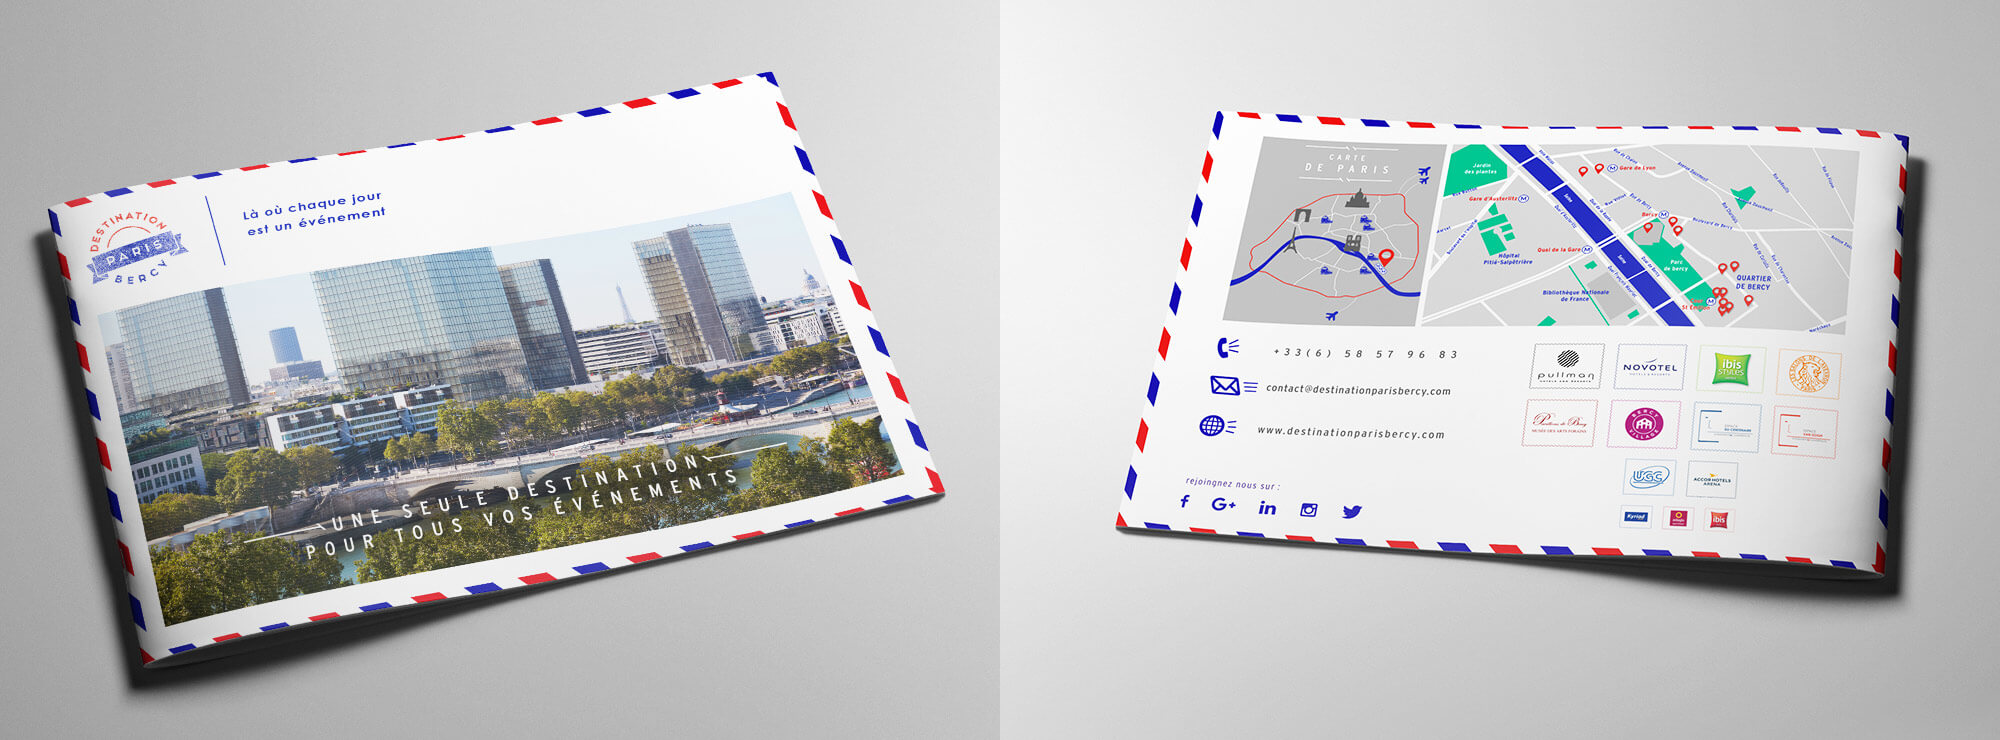 Destination Paris Bercy - une carte postale digitale parisienne